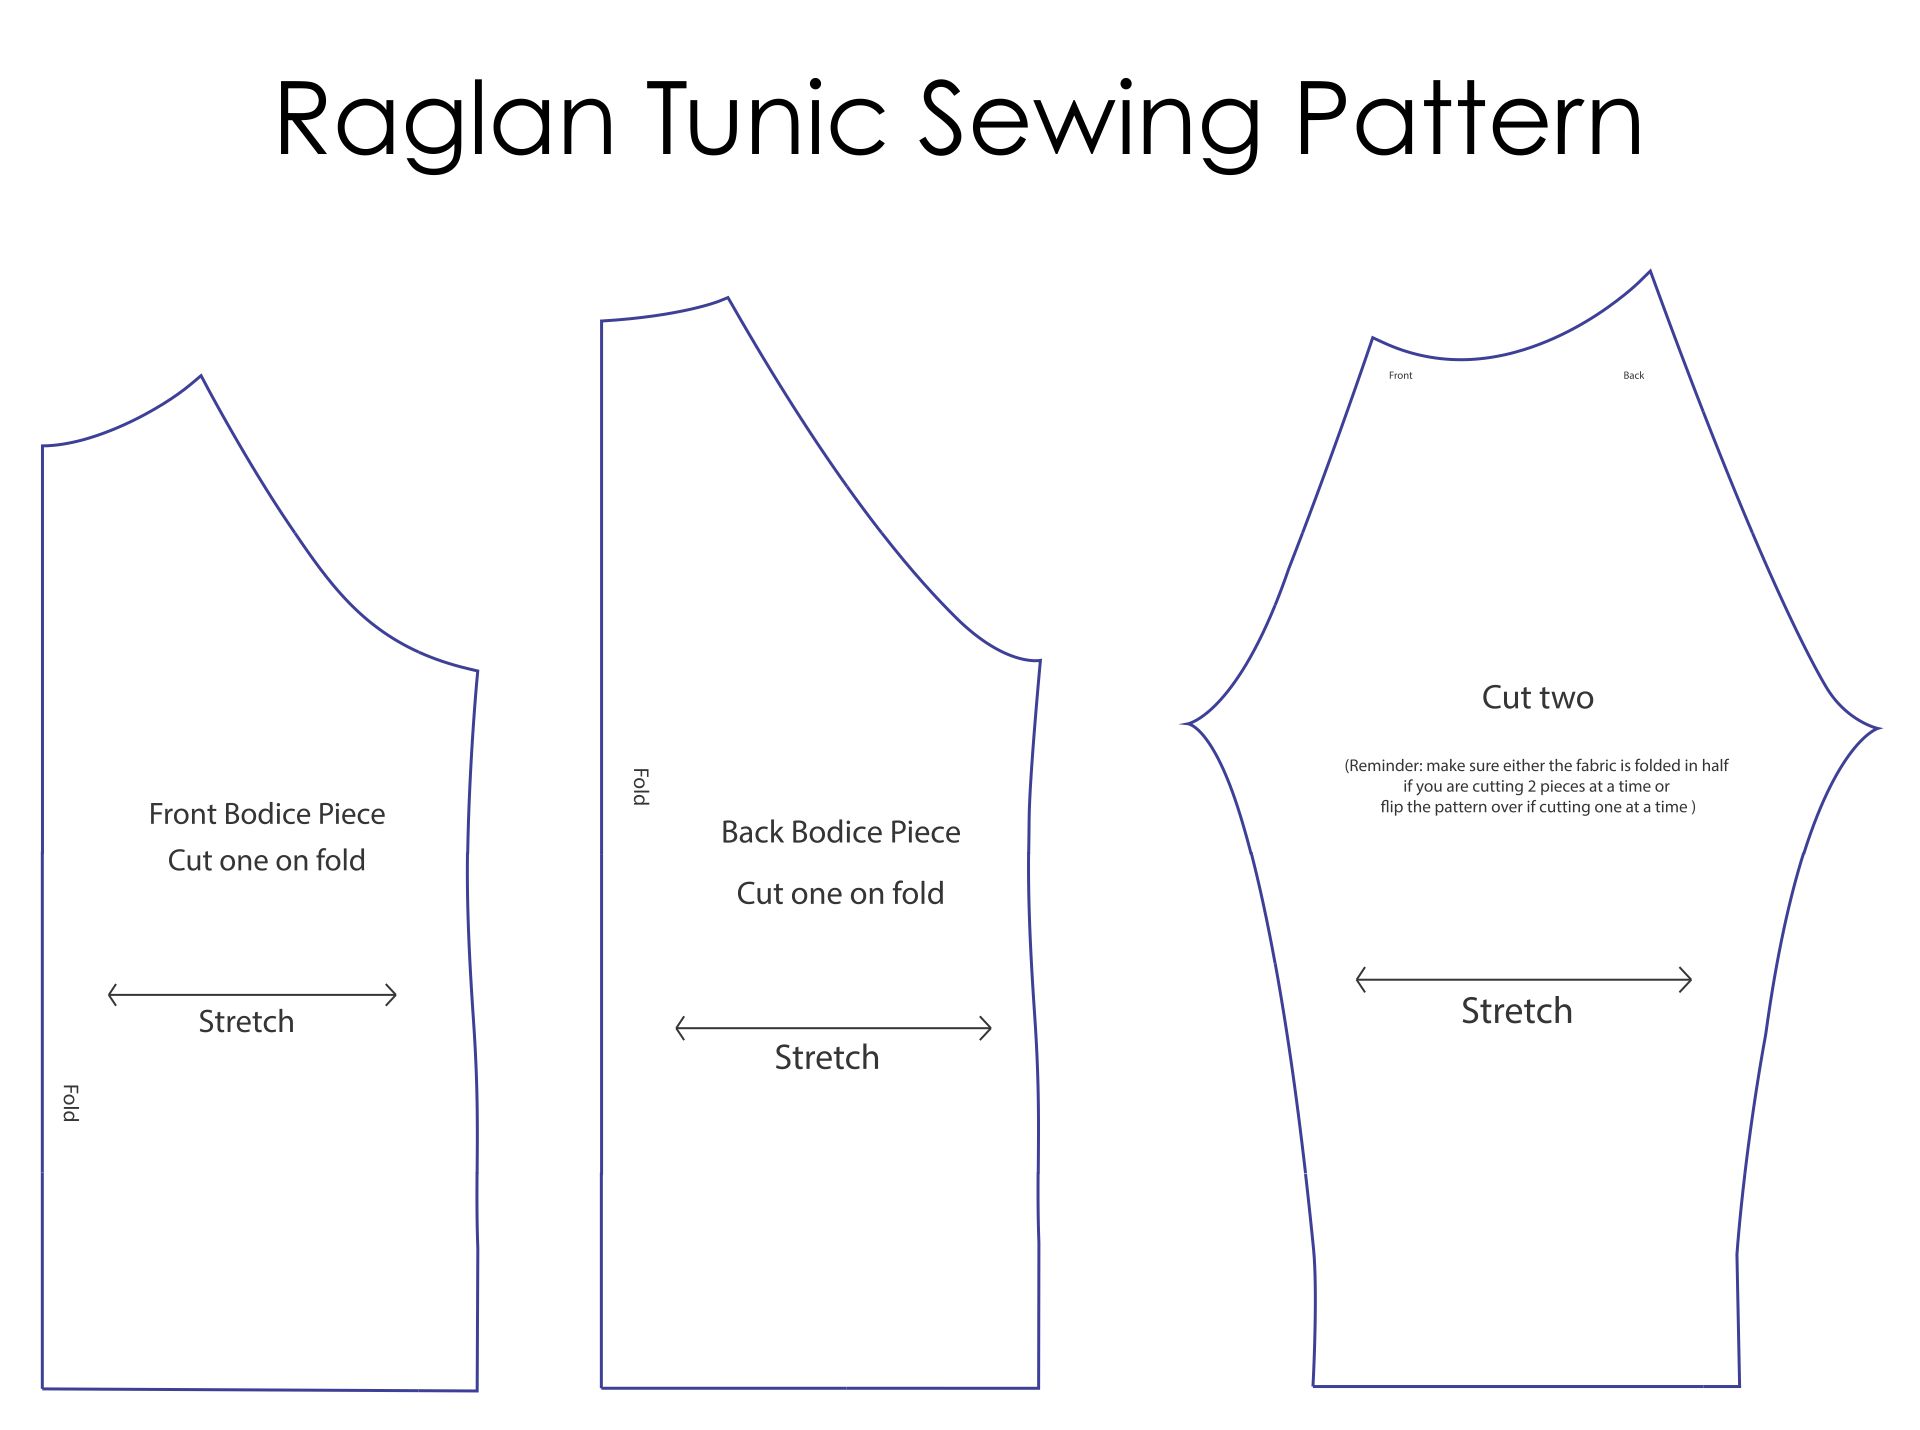 Raglan Tunic Sewing Pattern Free